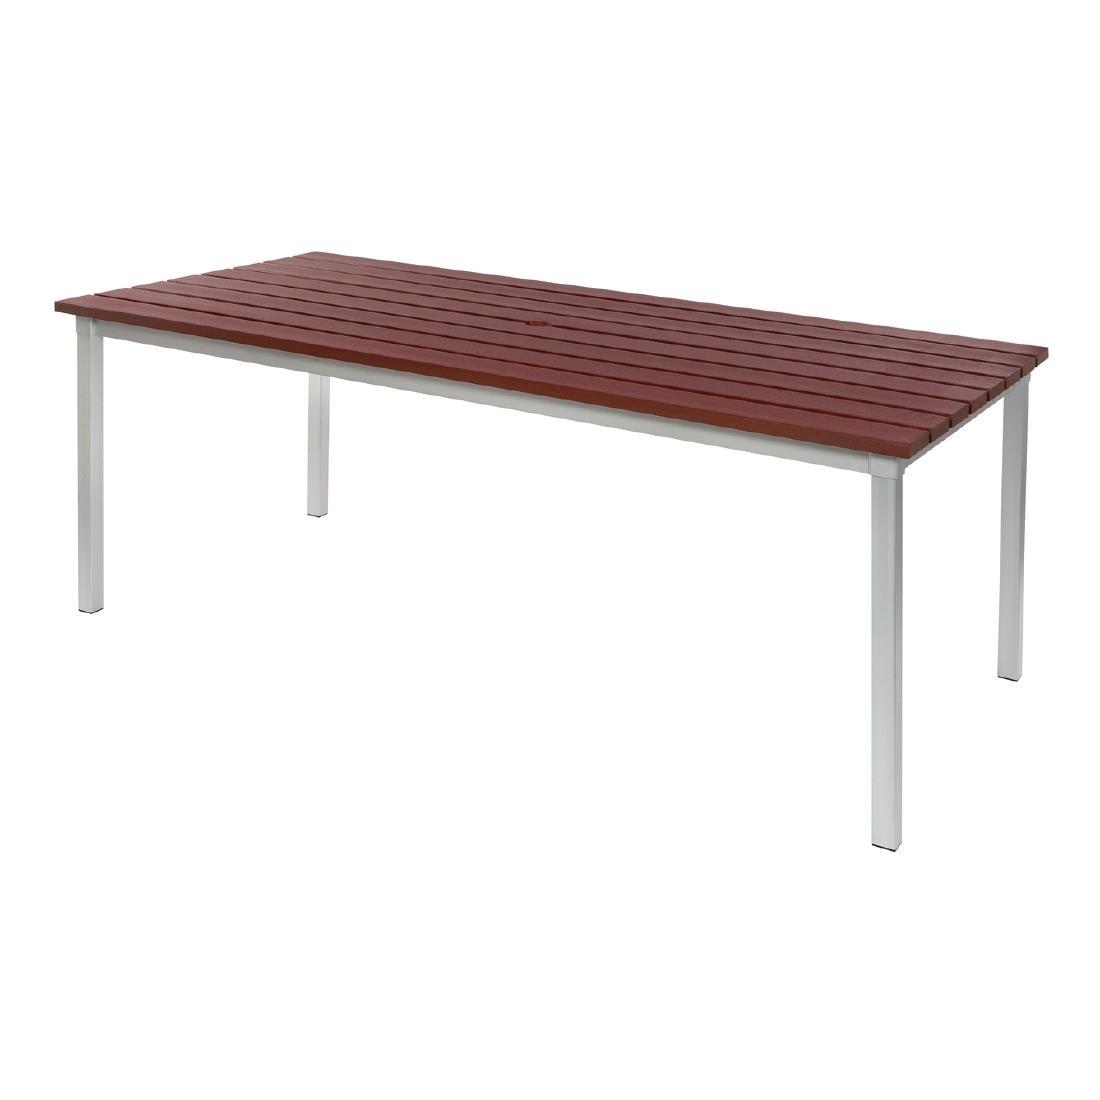 Enviro Outdoor Walnut Effect Faux Wood Table 1800mm - CK810  - 1